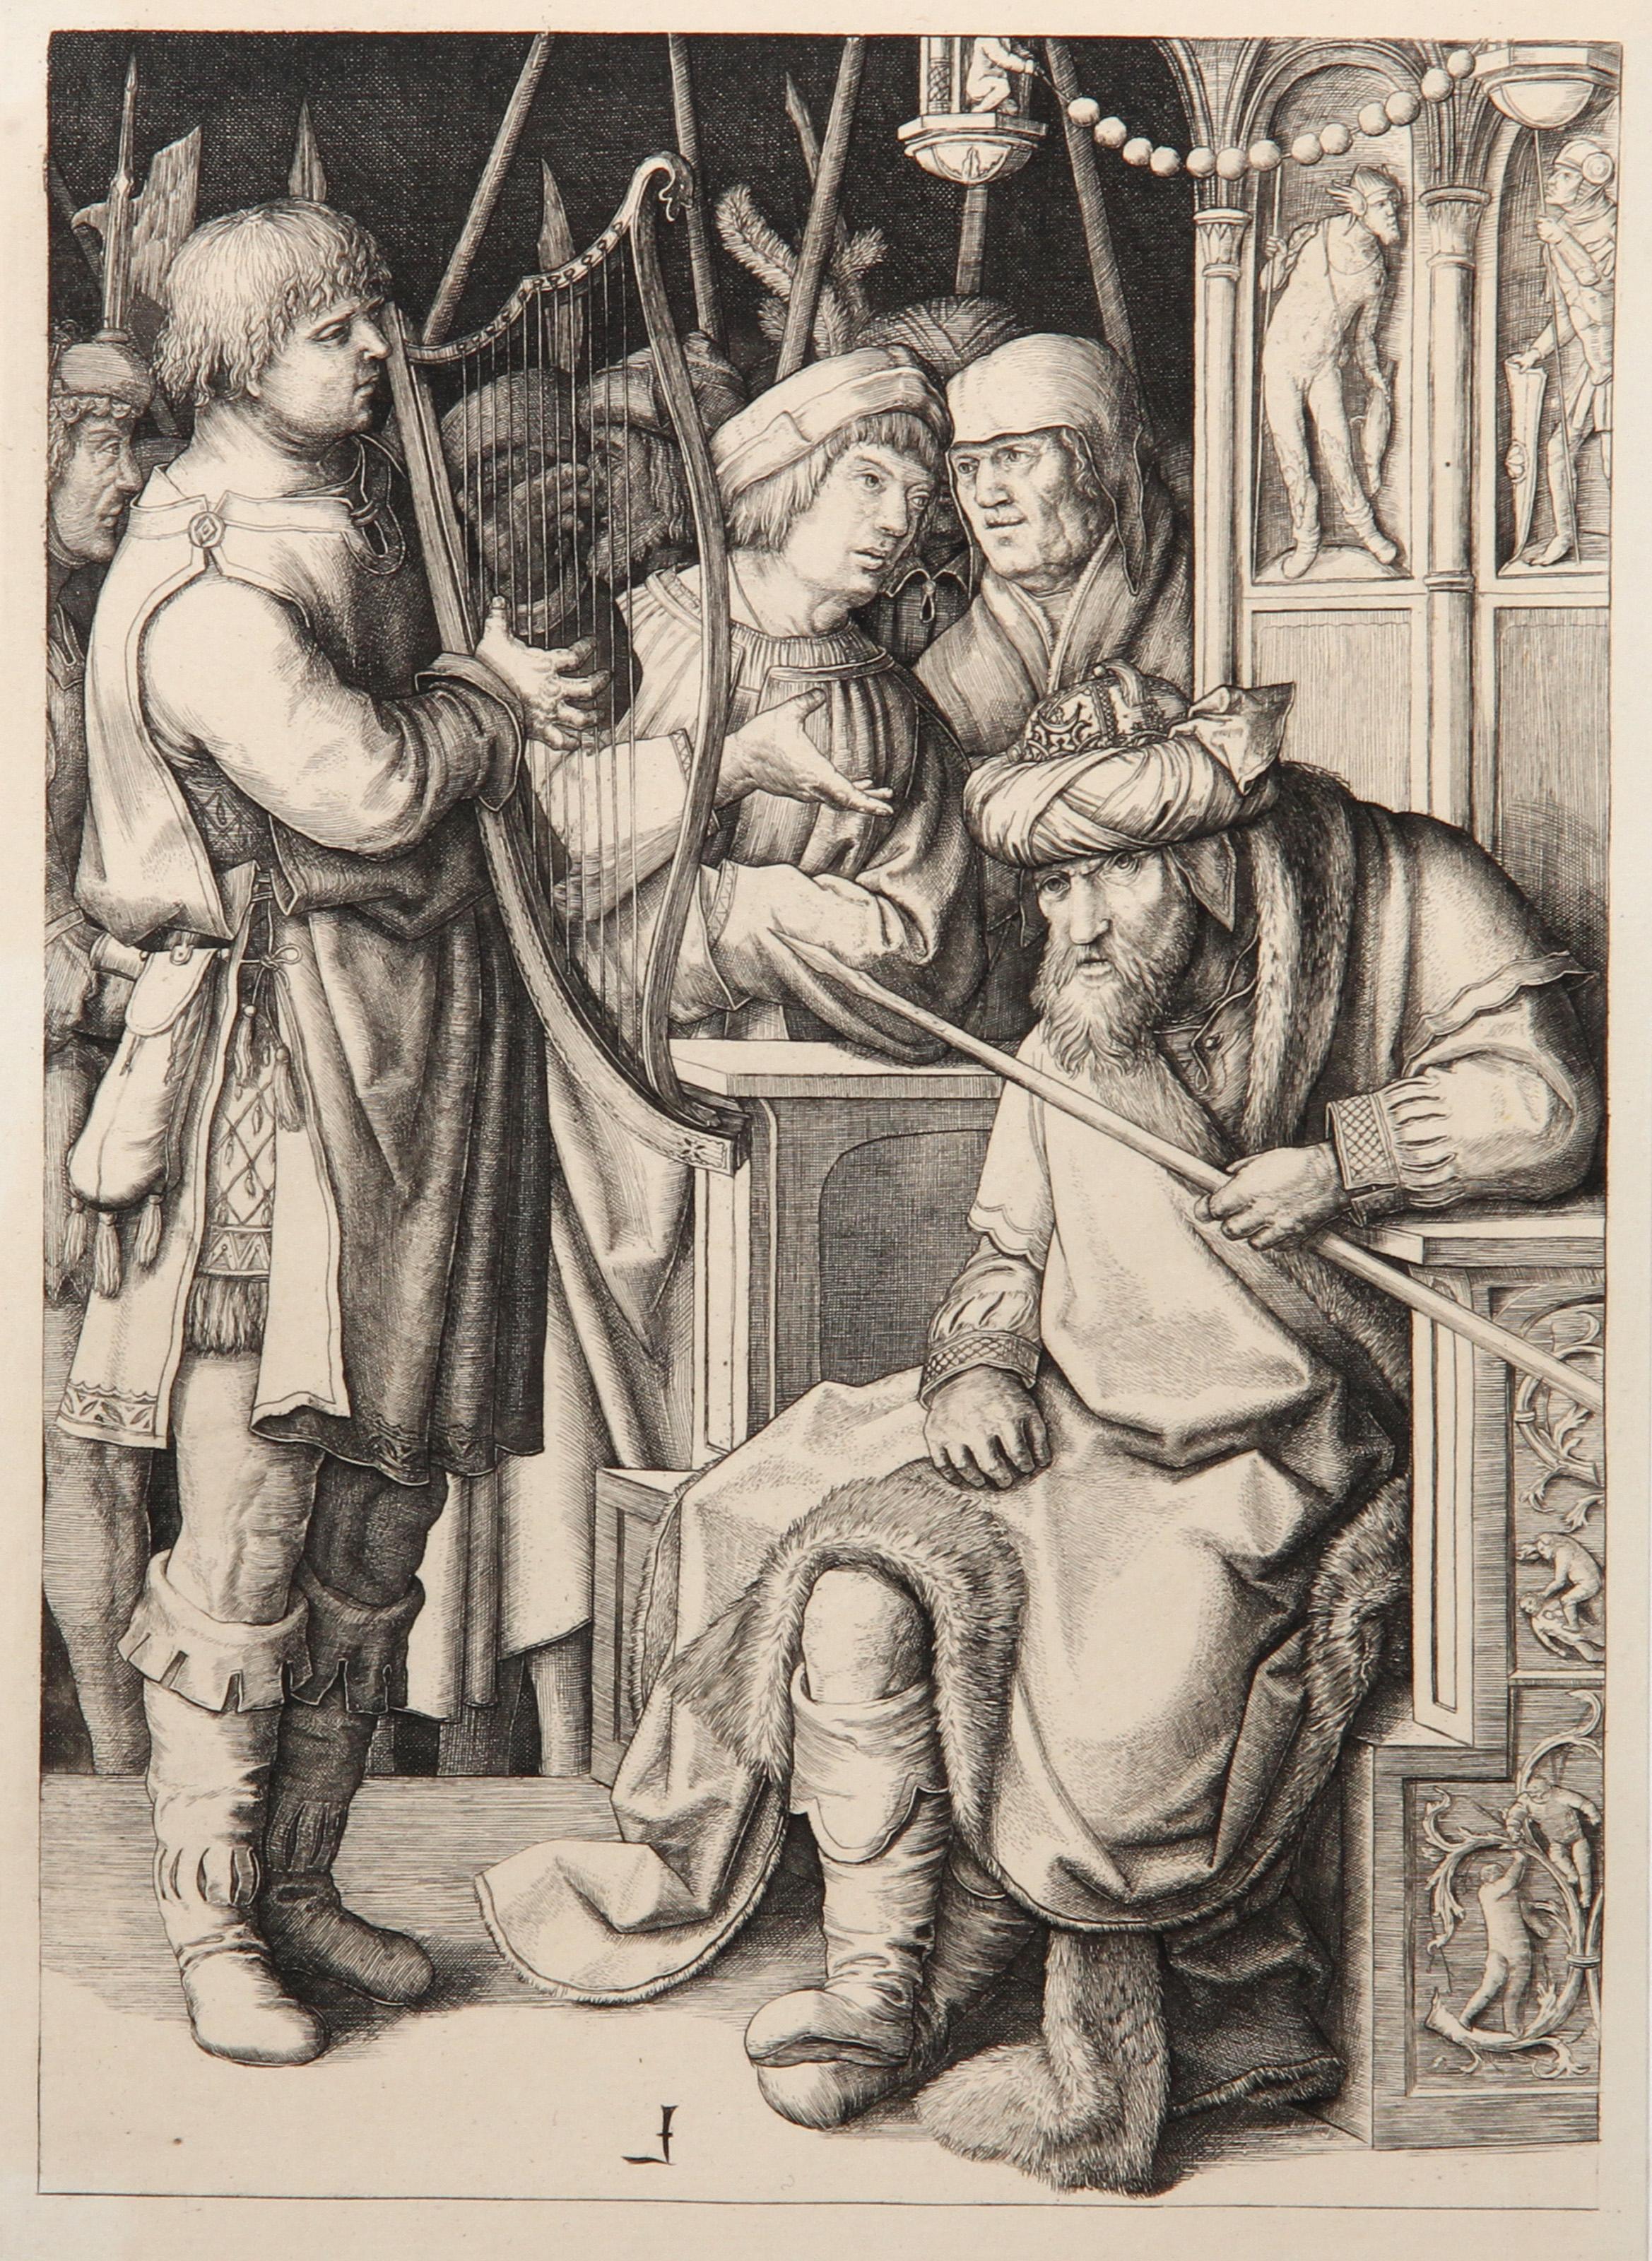 Artist: Lucas van Leyden, After by Amand Durand, Dutch (1494 - 1533) - David jouant de la Harpe devant Saul, Year: 1873, Medium: Heliogravure, Size: 10.5  x 7.5 in. (26.67  x 19.05 cm), Printer: Amand Durand, Description: French Engraver and painter